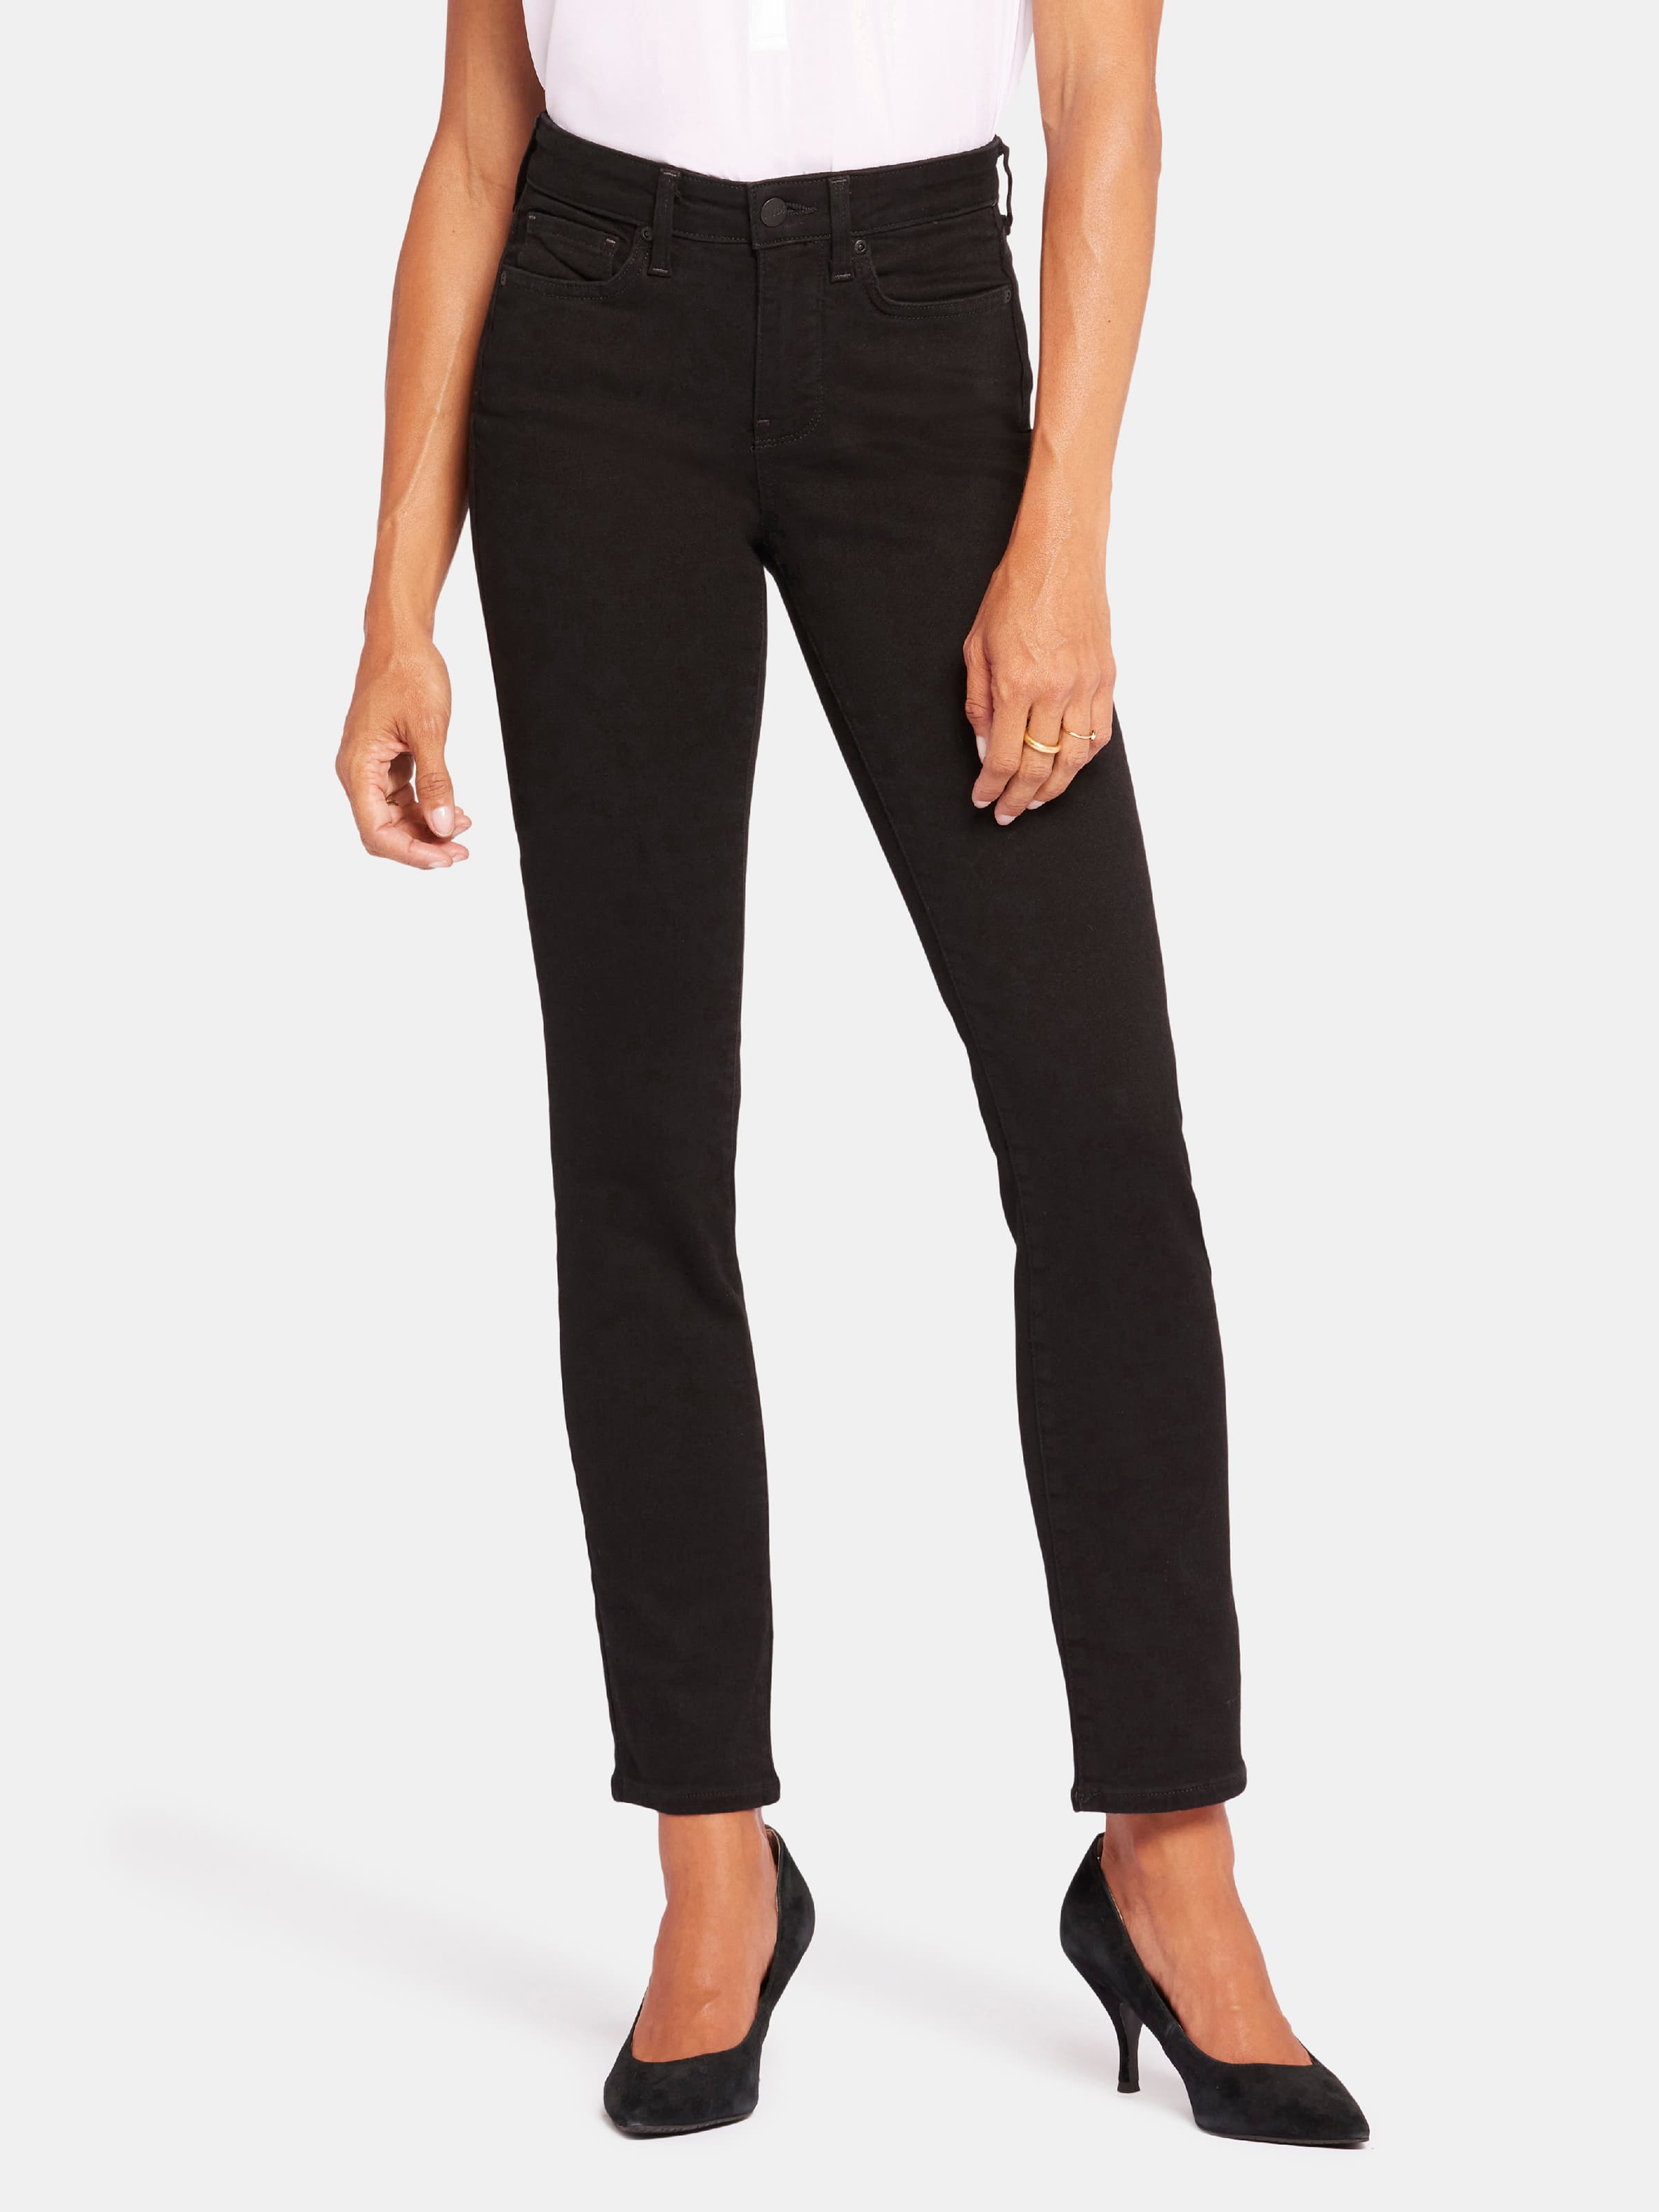 Sheri Slim Jean In Black - Just Jeans Online